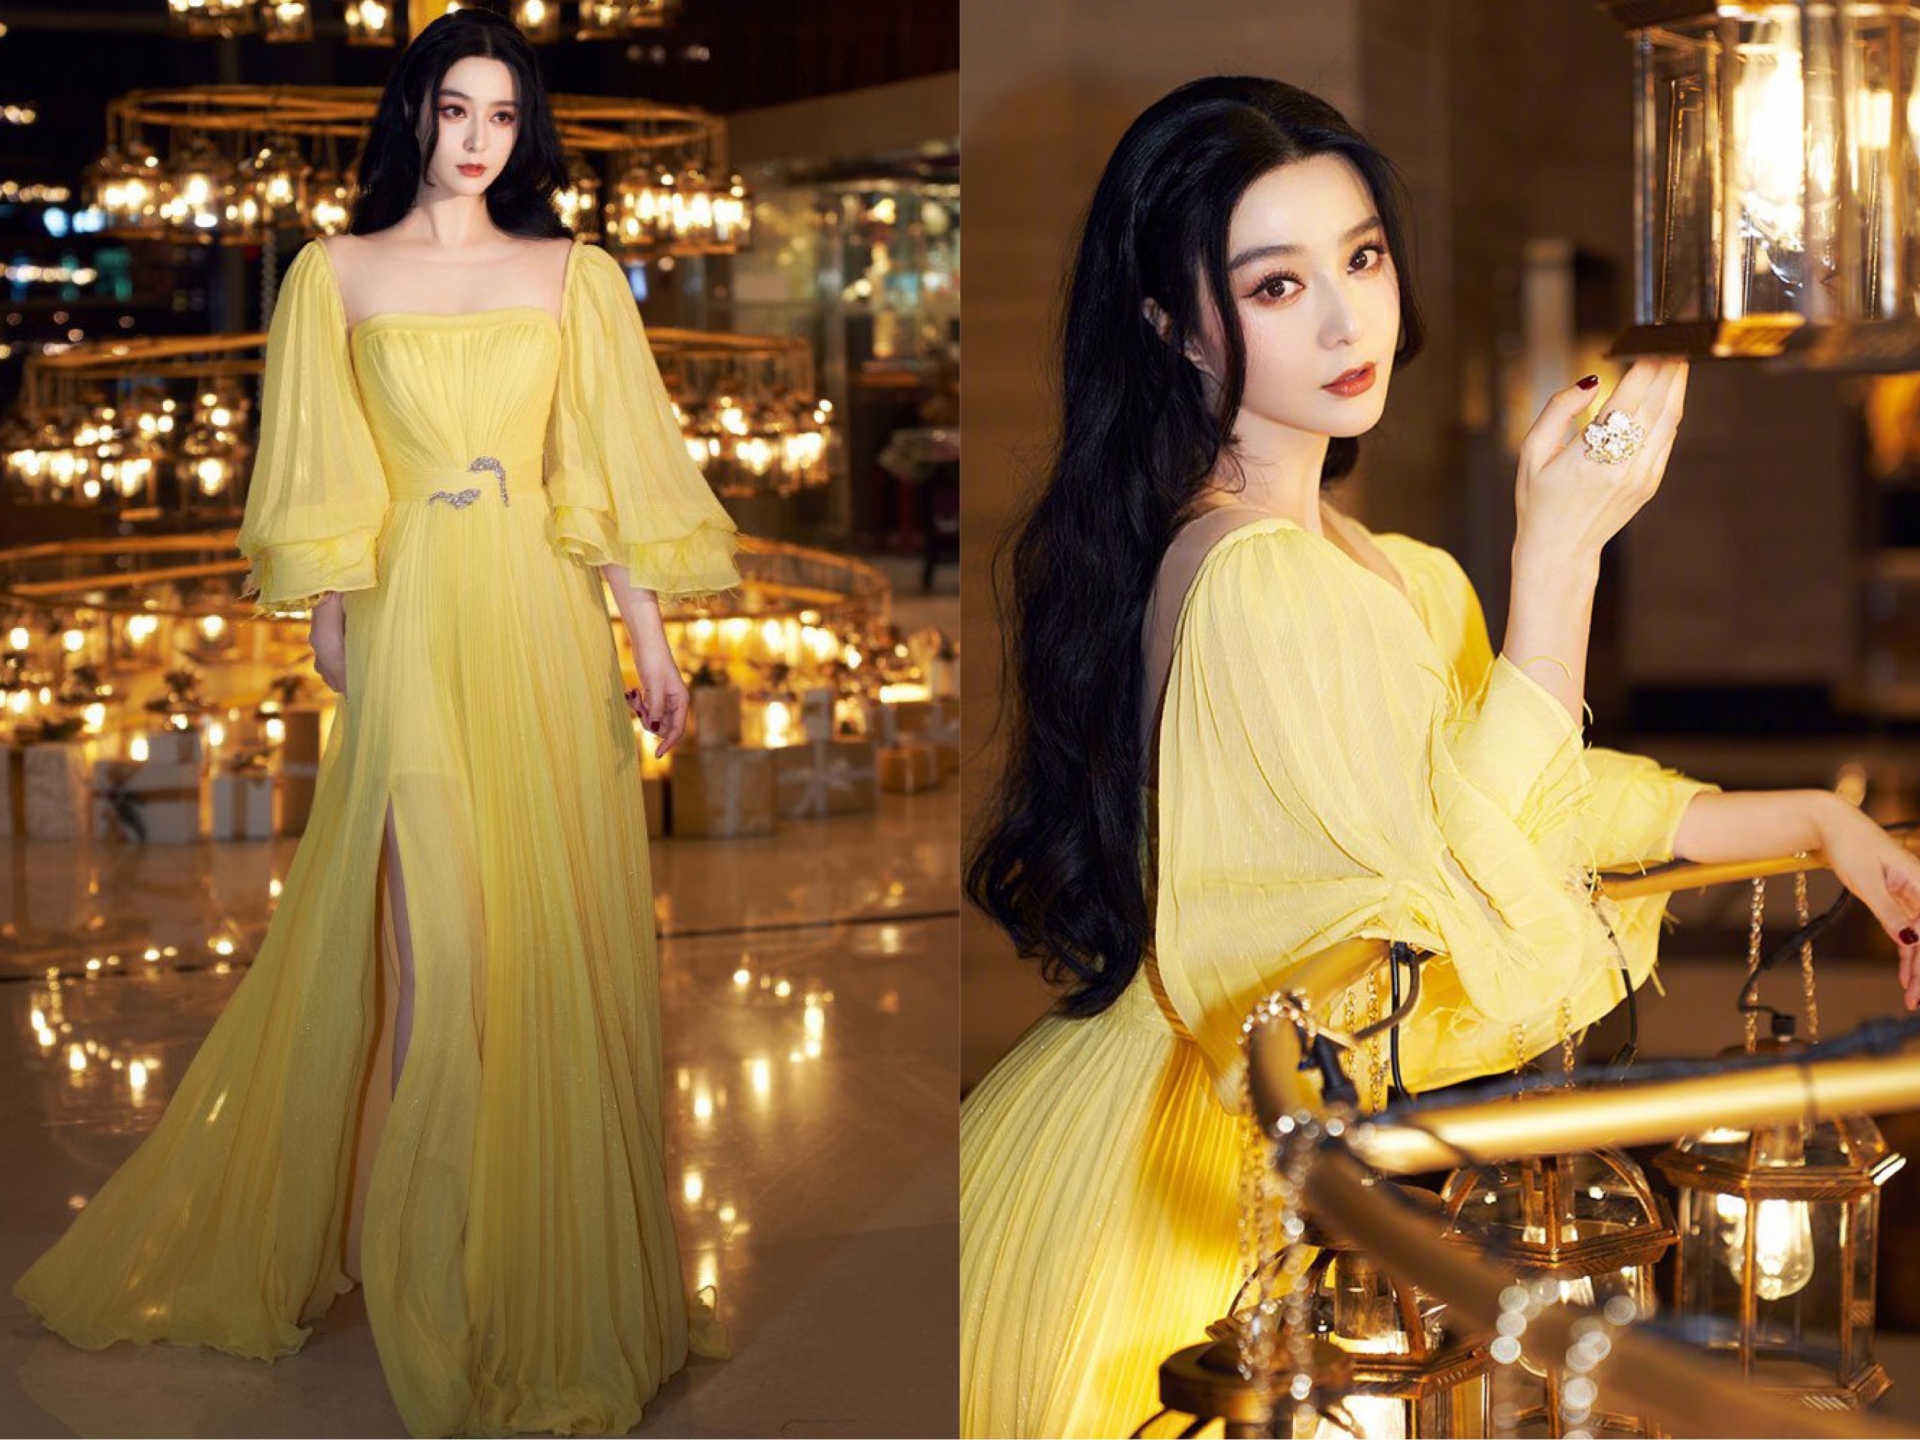 Mặc dù trang phục và lối makeup của Phạm Băng Băng đều là phong cách 'ruột' của cô nhưng lại chưa bao giờ bị chê là nhàm chán hay nhạt nhẽo. Chiếc váy vàng như được 'đo ni đóng giày' cho cô đã tôn lên tất cả vẻ đẹp khiến netizen không khỏi xiêu lòng.